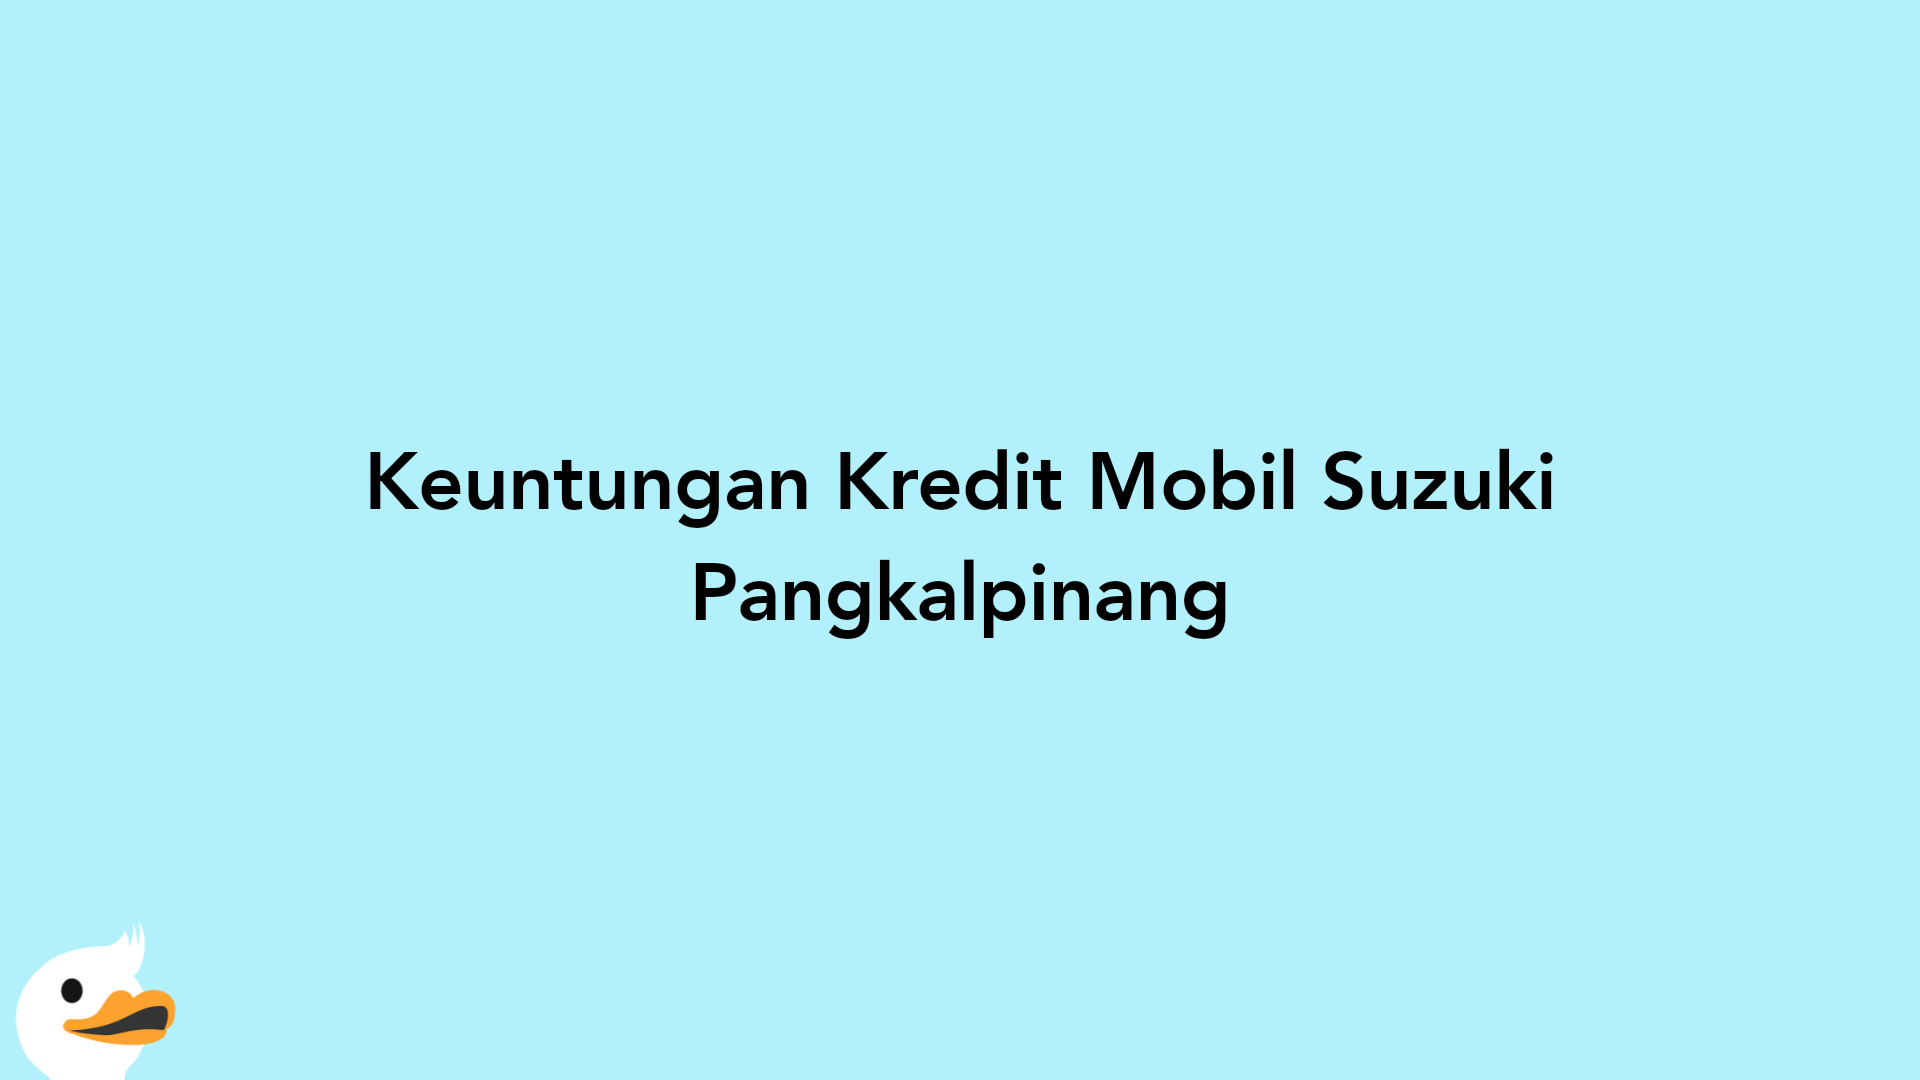 Keuntungan Kredit Mobil Suzuki Pangkalpinang